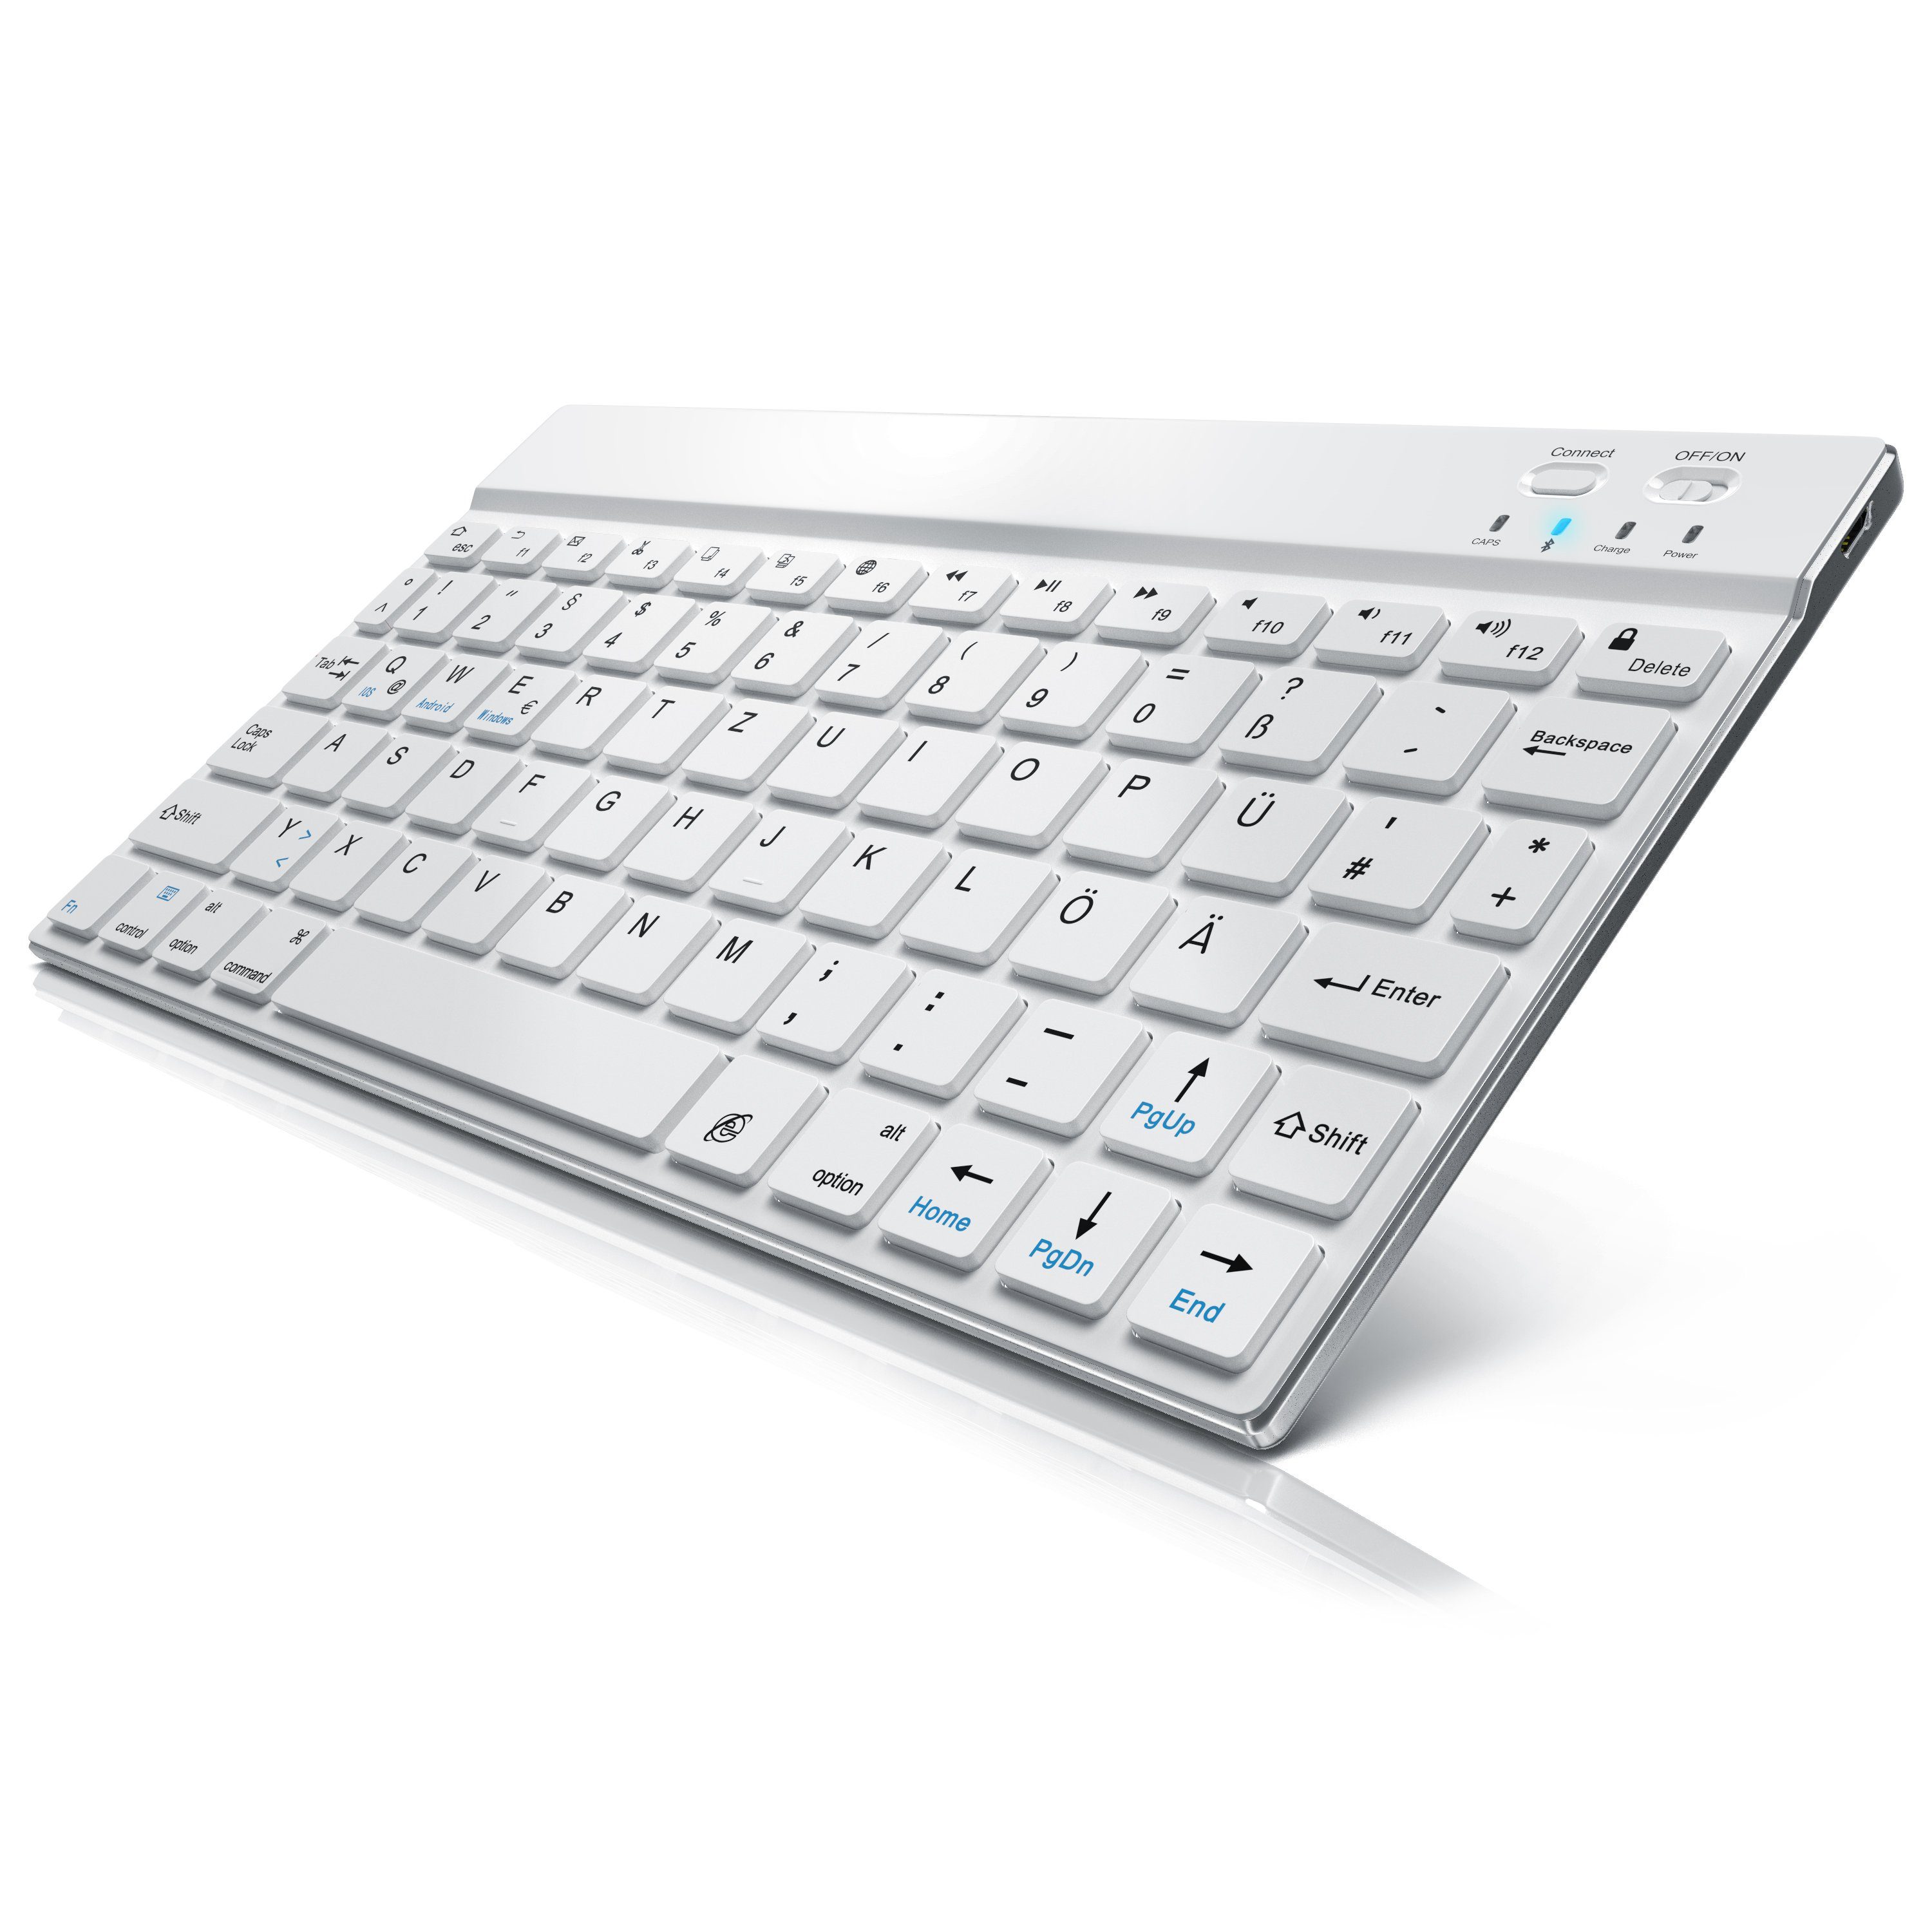 CSL Wireless-Tastatur (Ultra Slim Keyboard, Bluetooth, Alugehäuse, Deutsches Layout, BT 3.0) weiß/silber